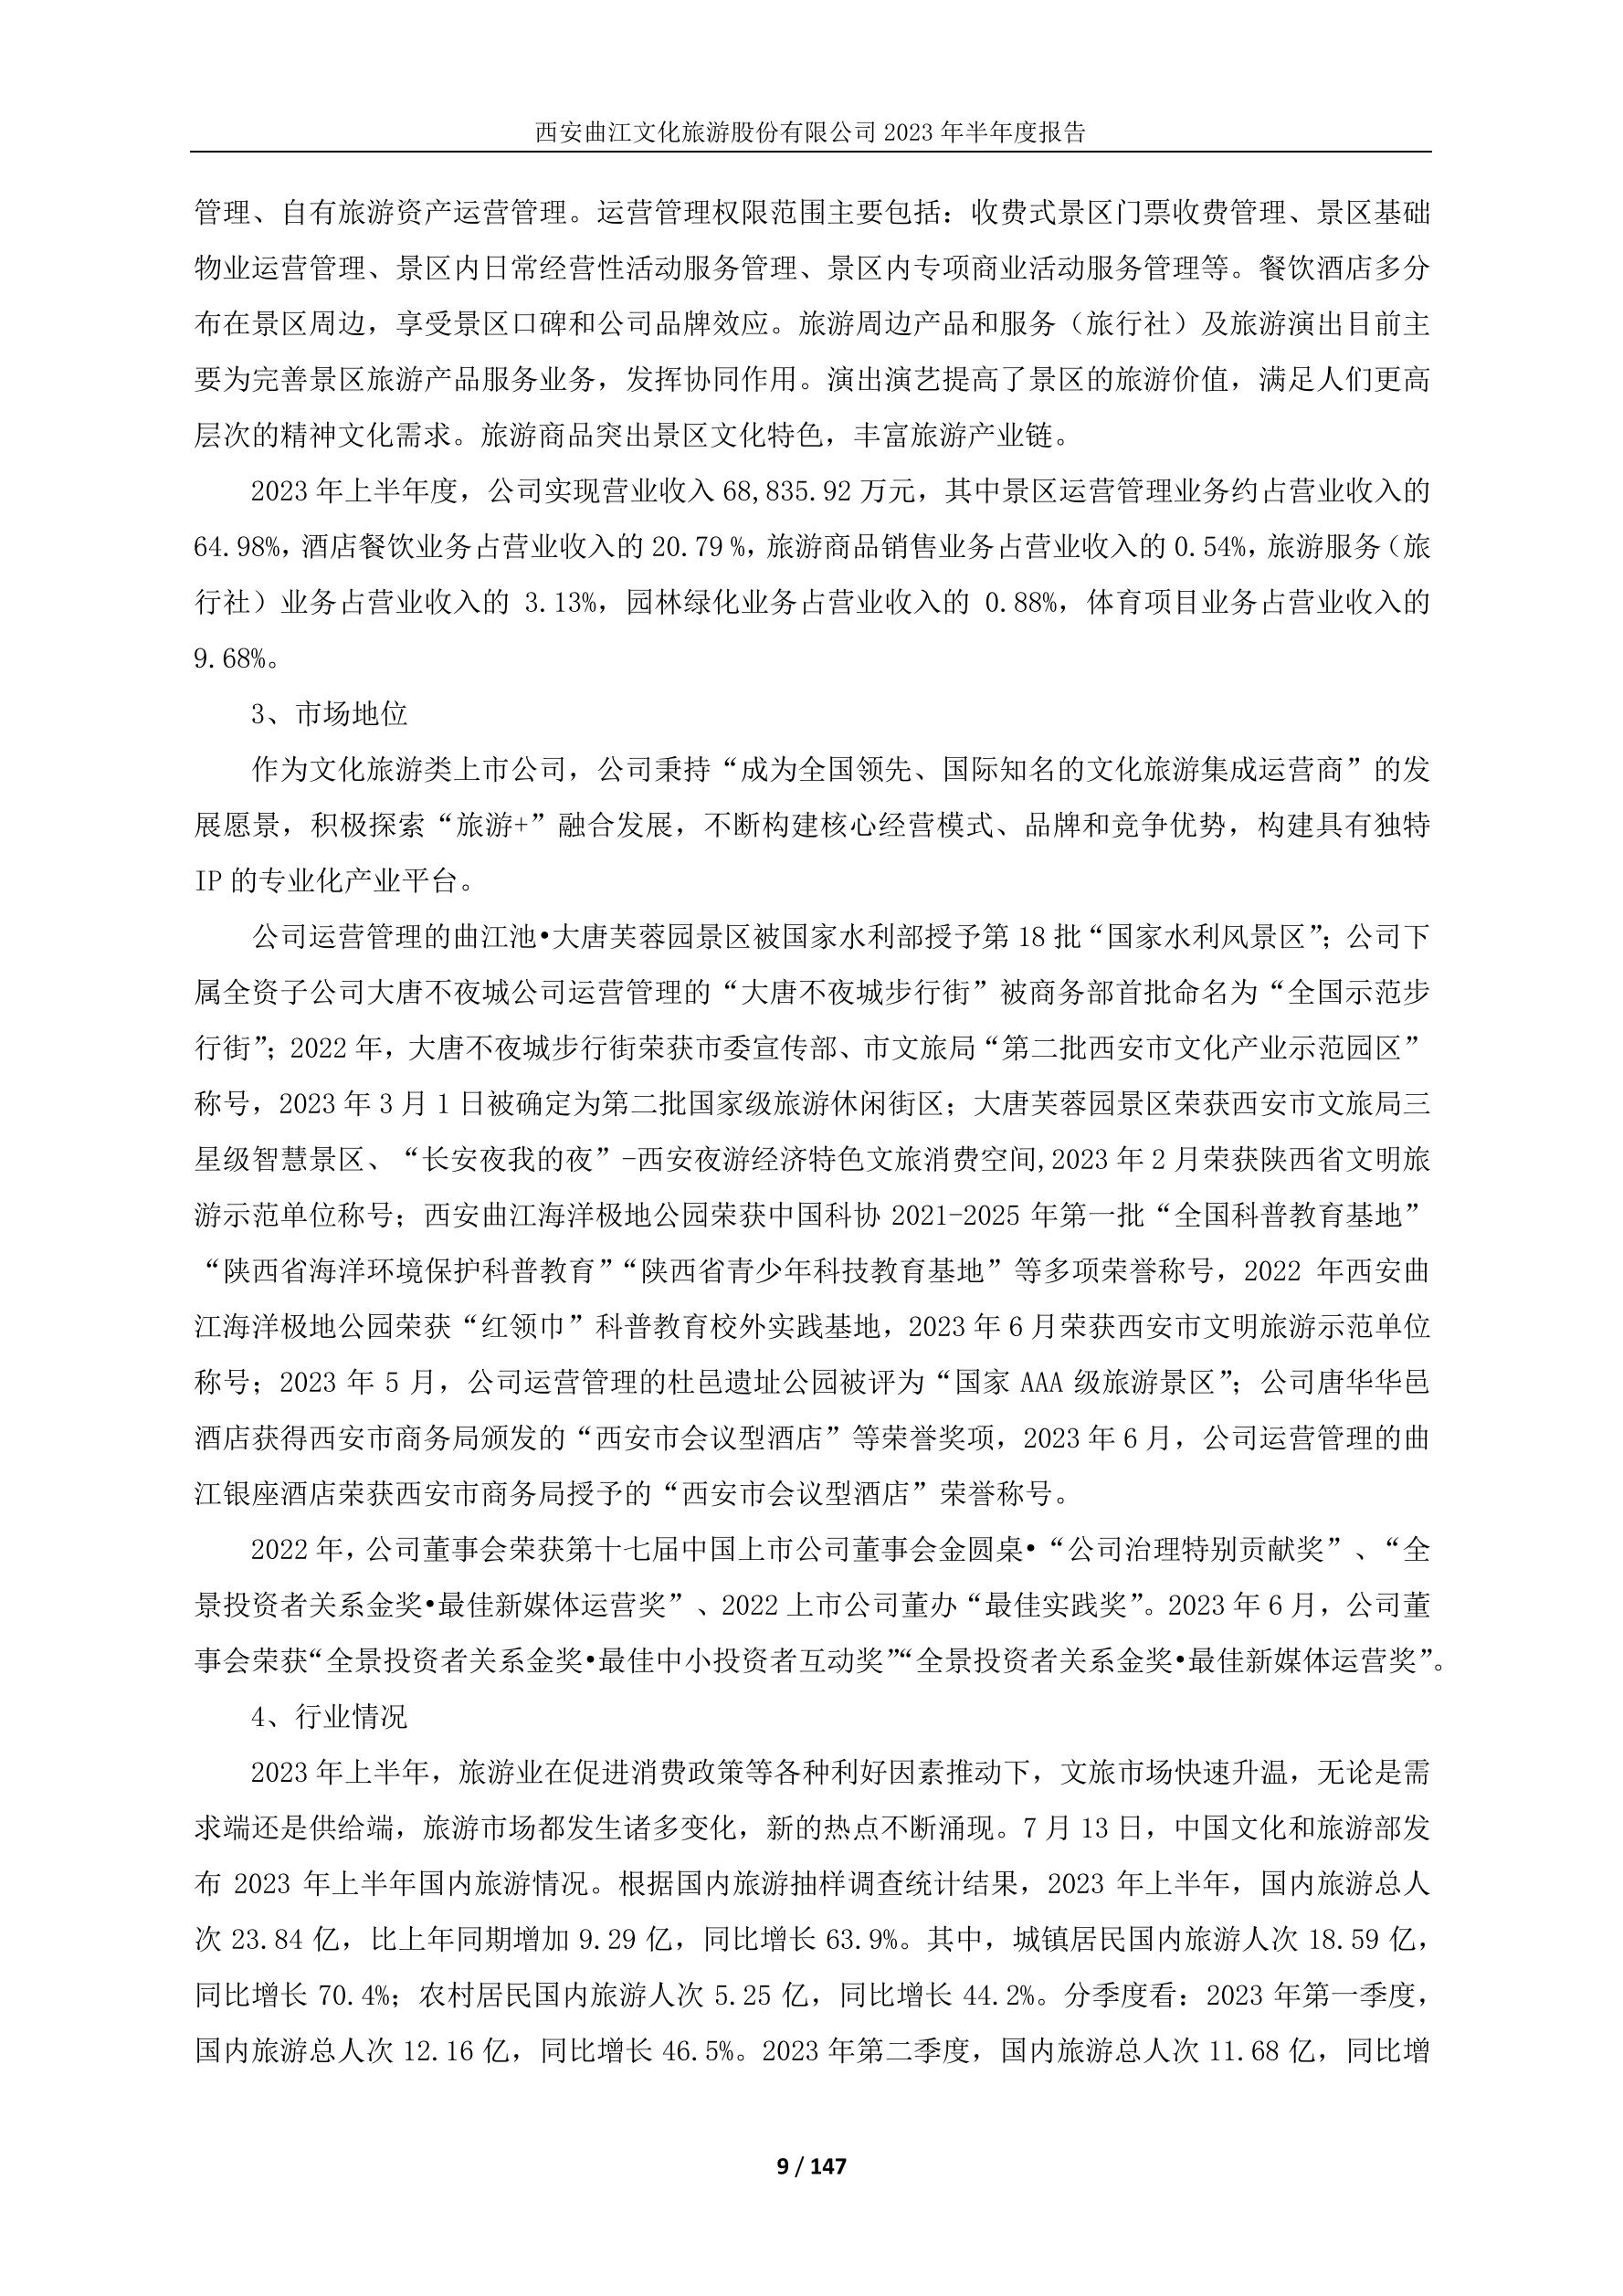 曲江文化产业集团成功入选第十二届“全国文化企业30强” - 西安曲江文化旅游股份有限公司